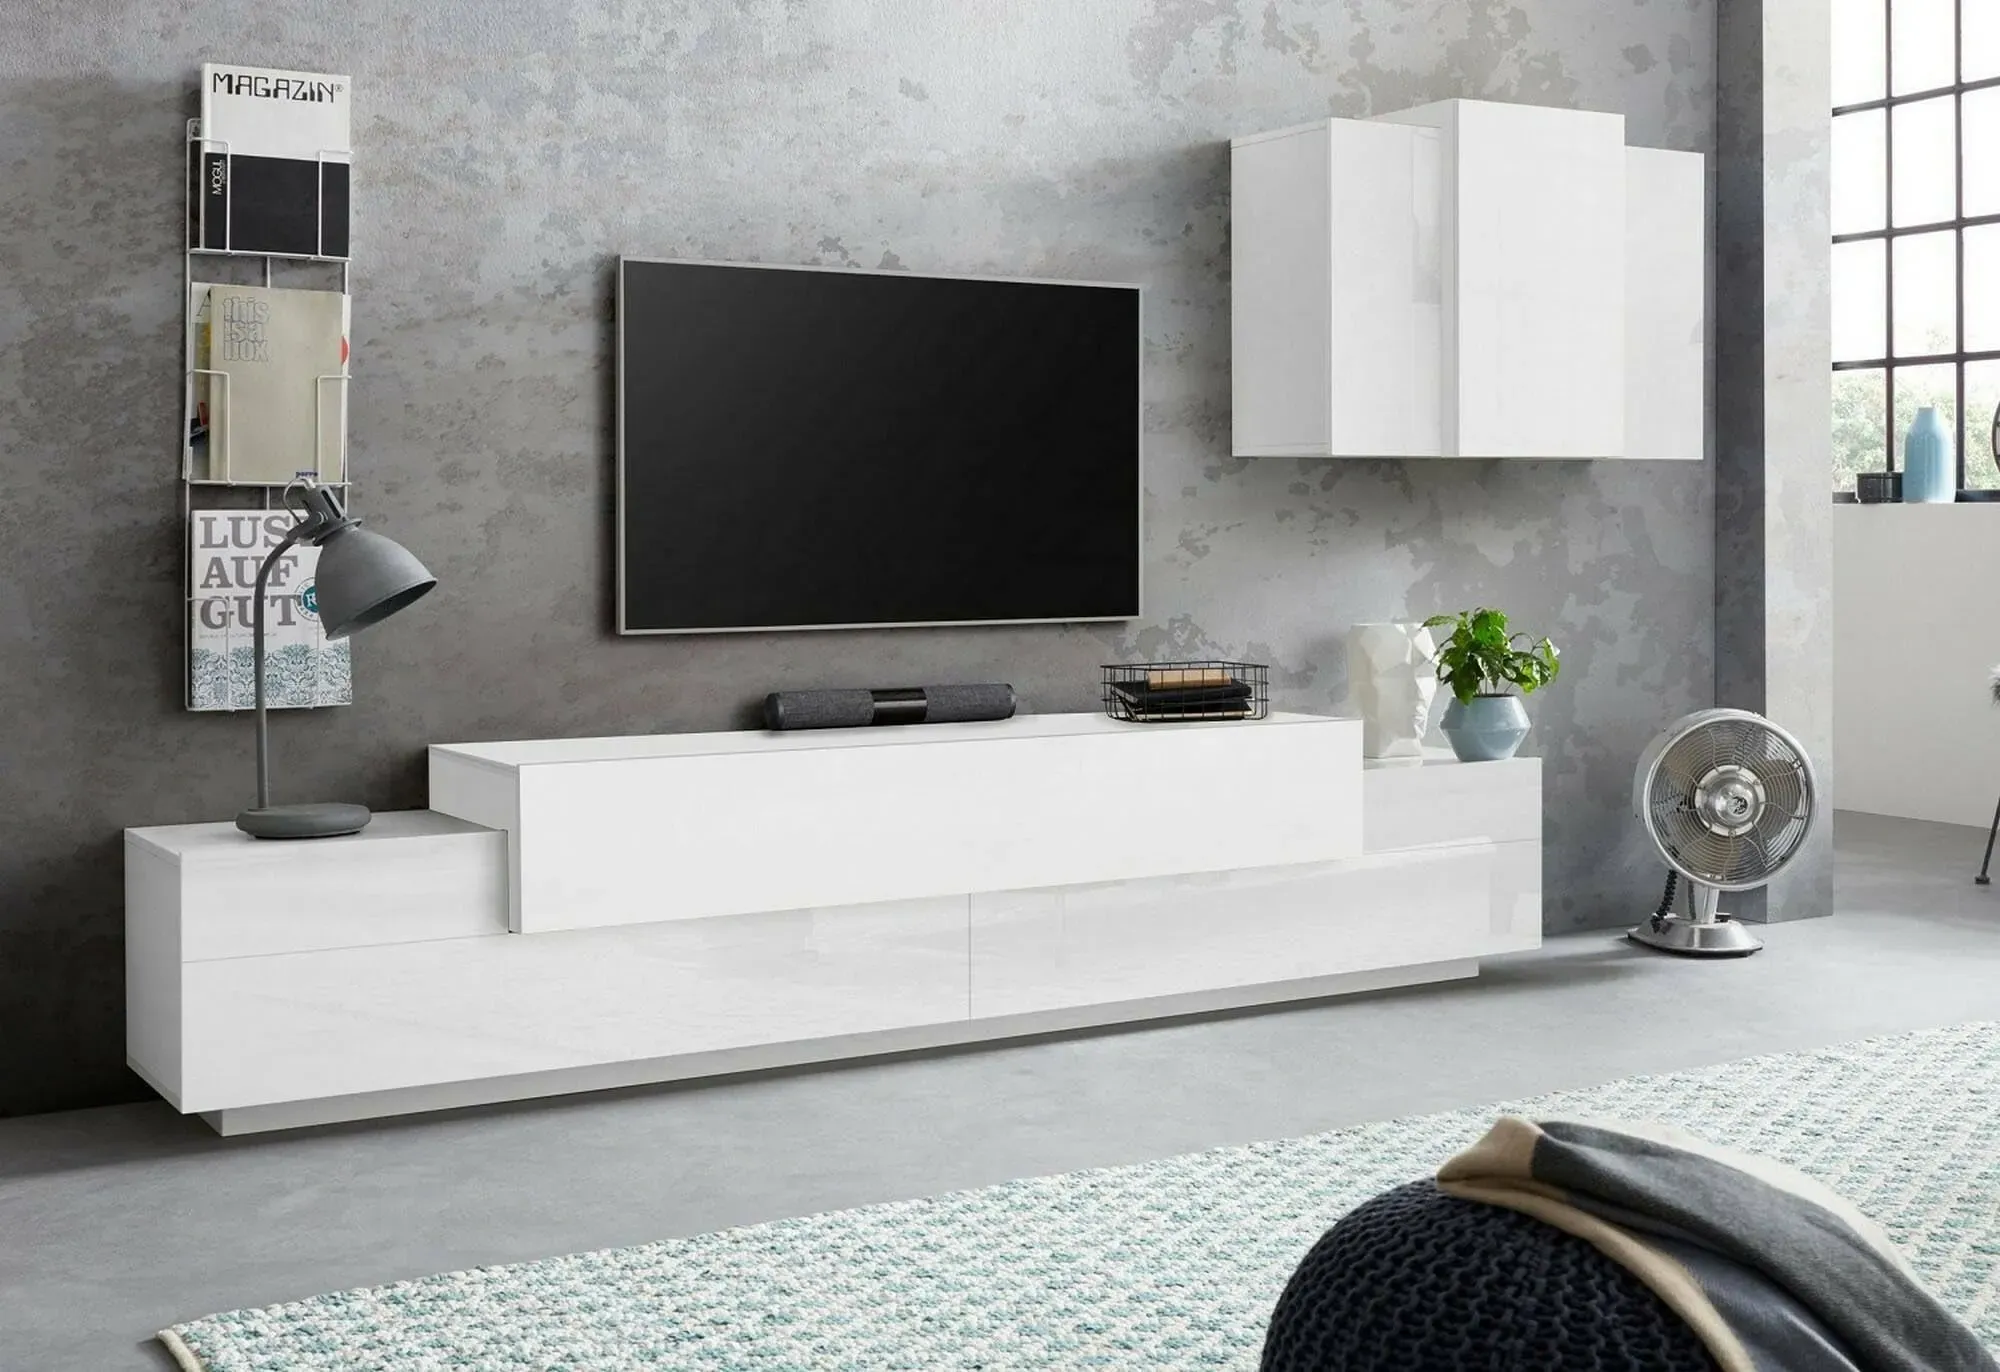 Dmora Wohnwand Ruben, Wohnzimmer-Set, TV-Schrank, Mehrzweck, 100% Made in Italy, 240 x 45 x 180 cm, weiß glänzend